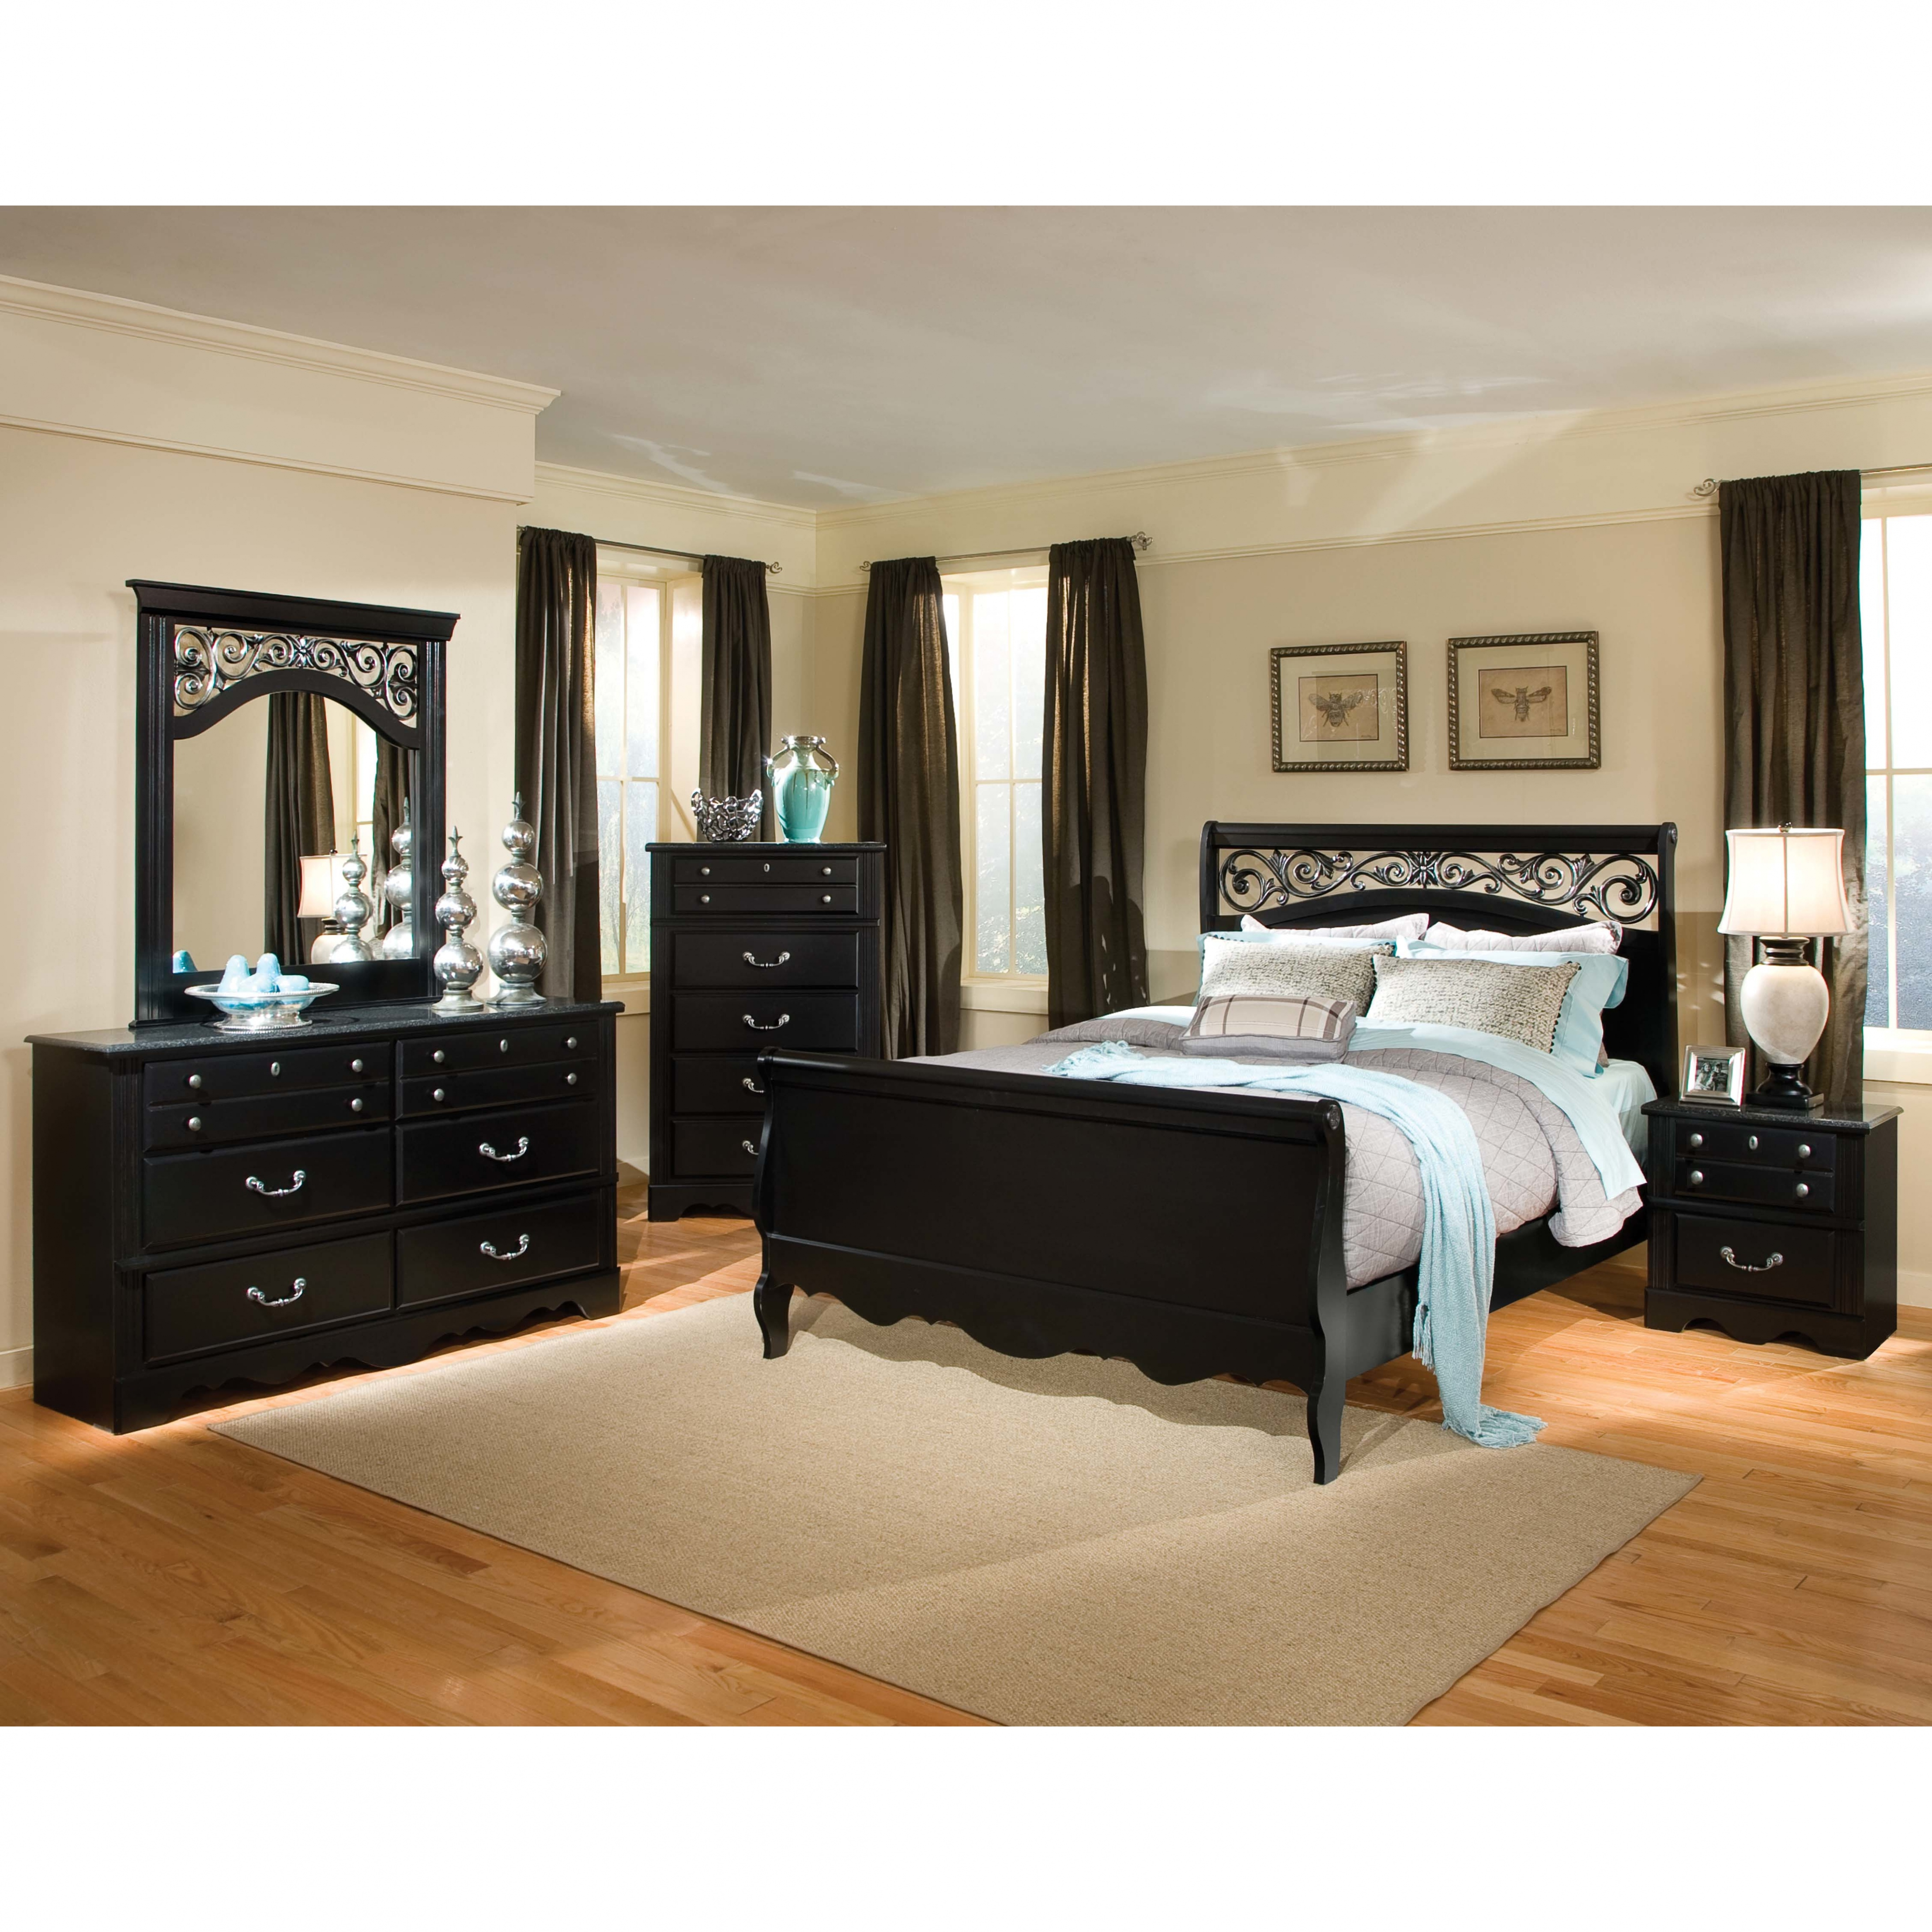 Full Bedroom Sets Rabbssteak House for size 4376 X 4376